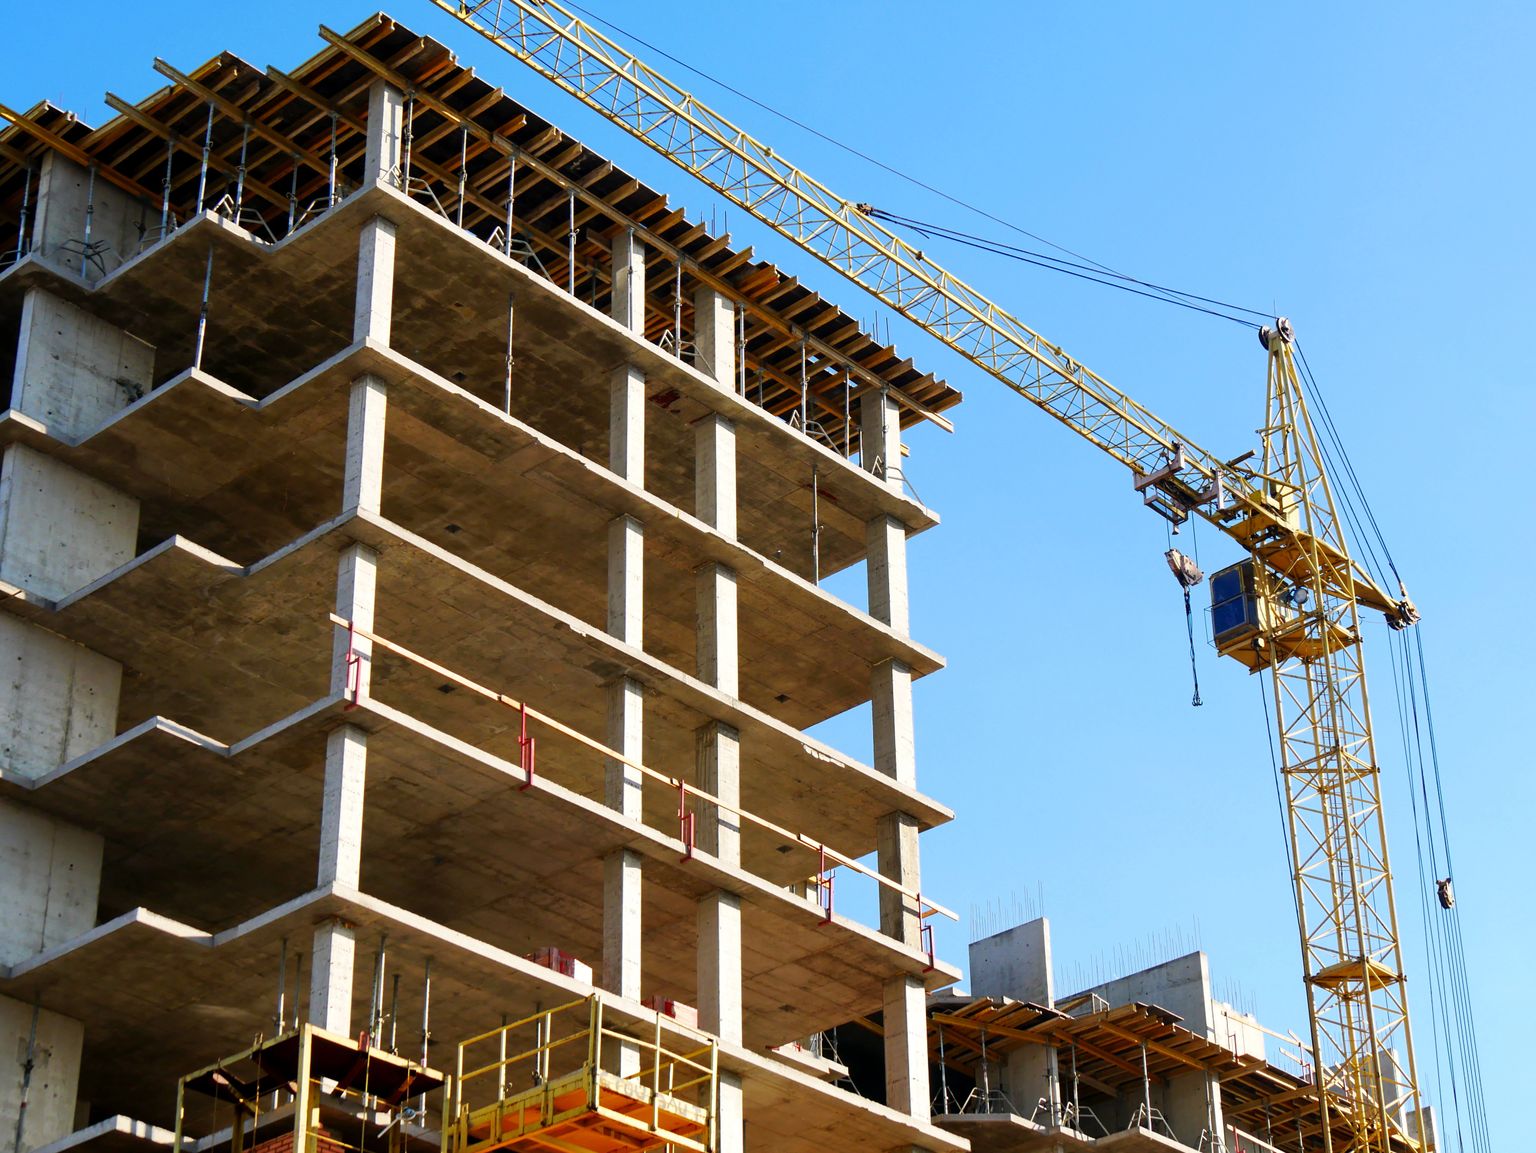 Välismaal tehtud ehitustööd annavad üldjuhul ligi kümnendiku kogu ehitustöödest.